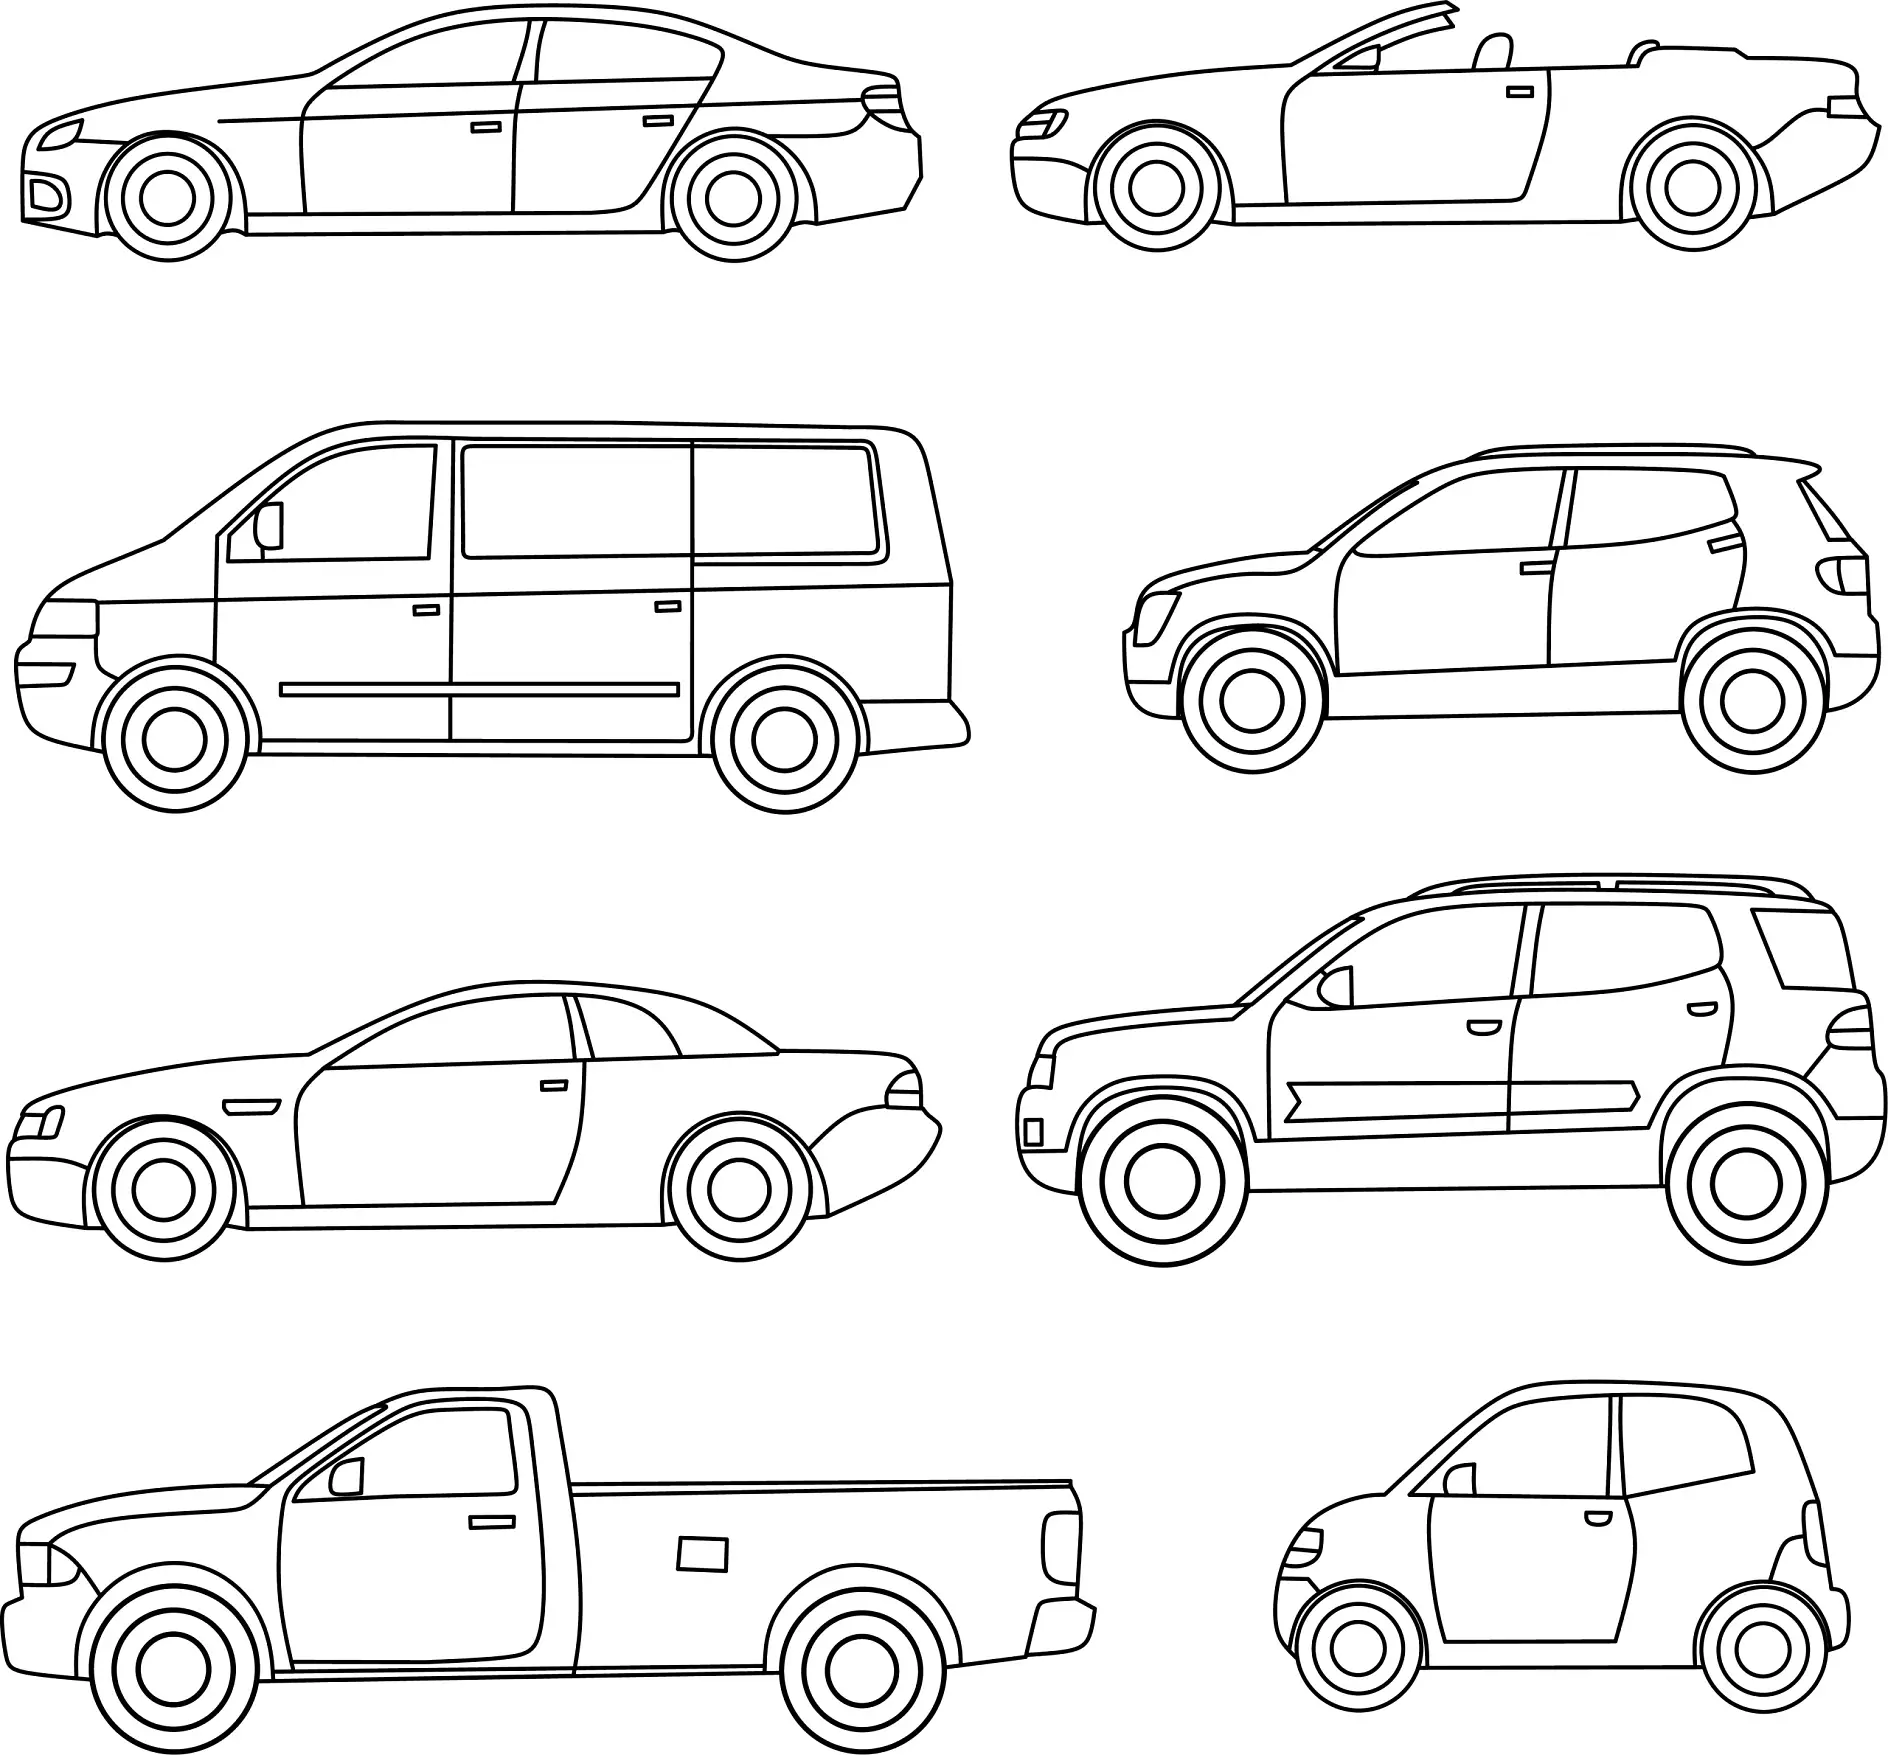 Ausmalbild Autos verschiedene Modelle von Limousinen bis Geländewagen